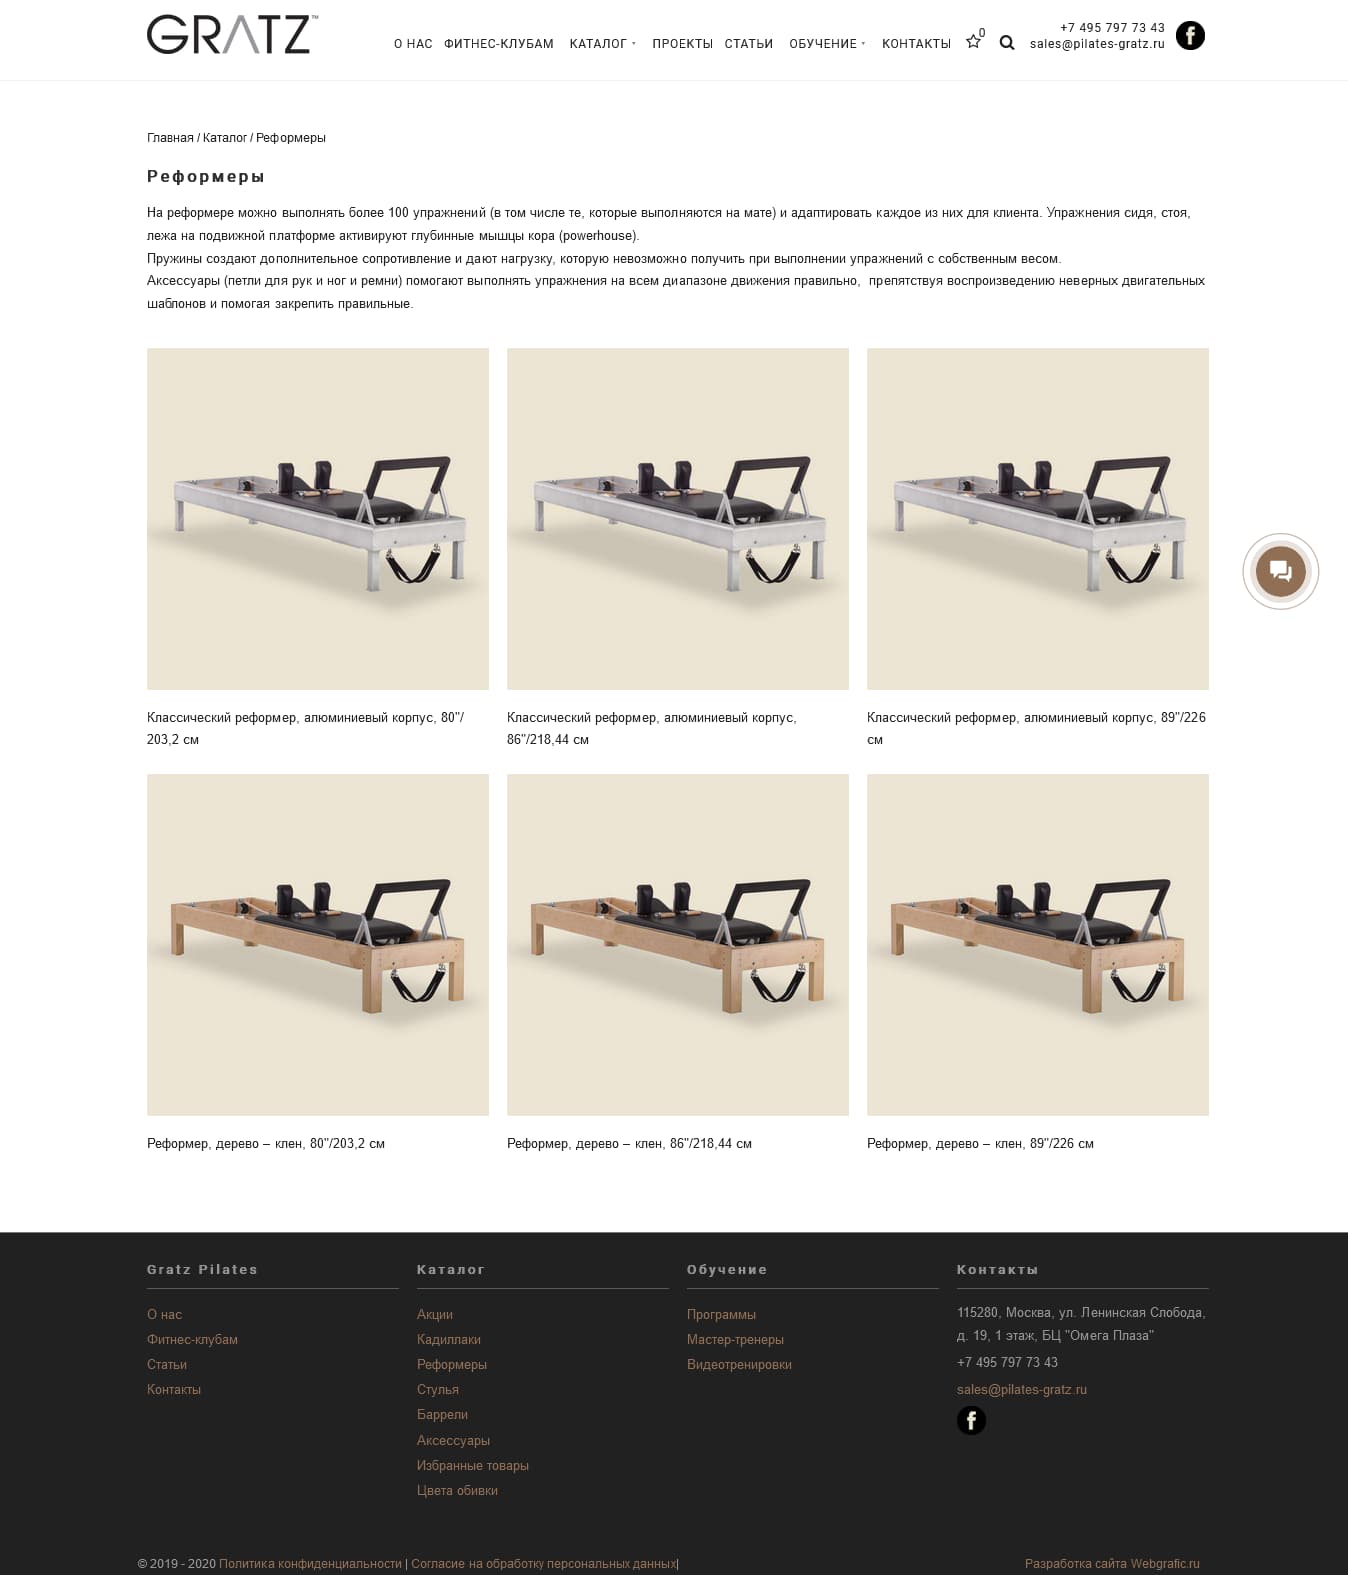 Разработка сайта-каталога оборудования для пилатеса Gratz Pilates